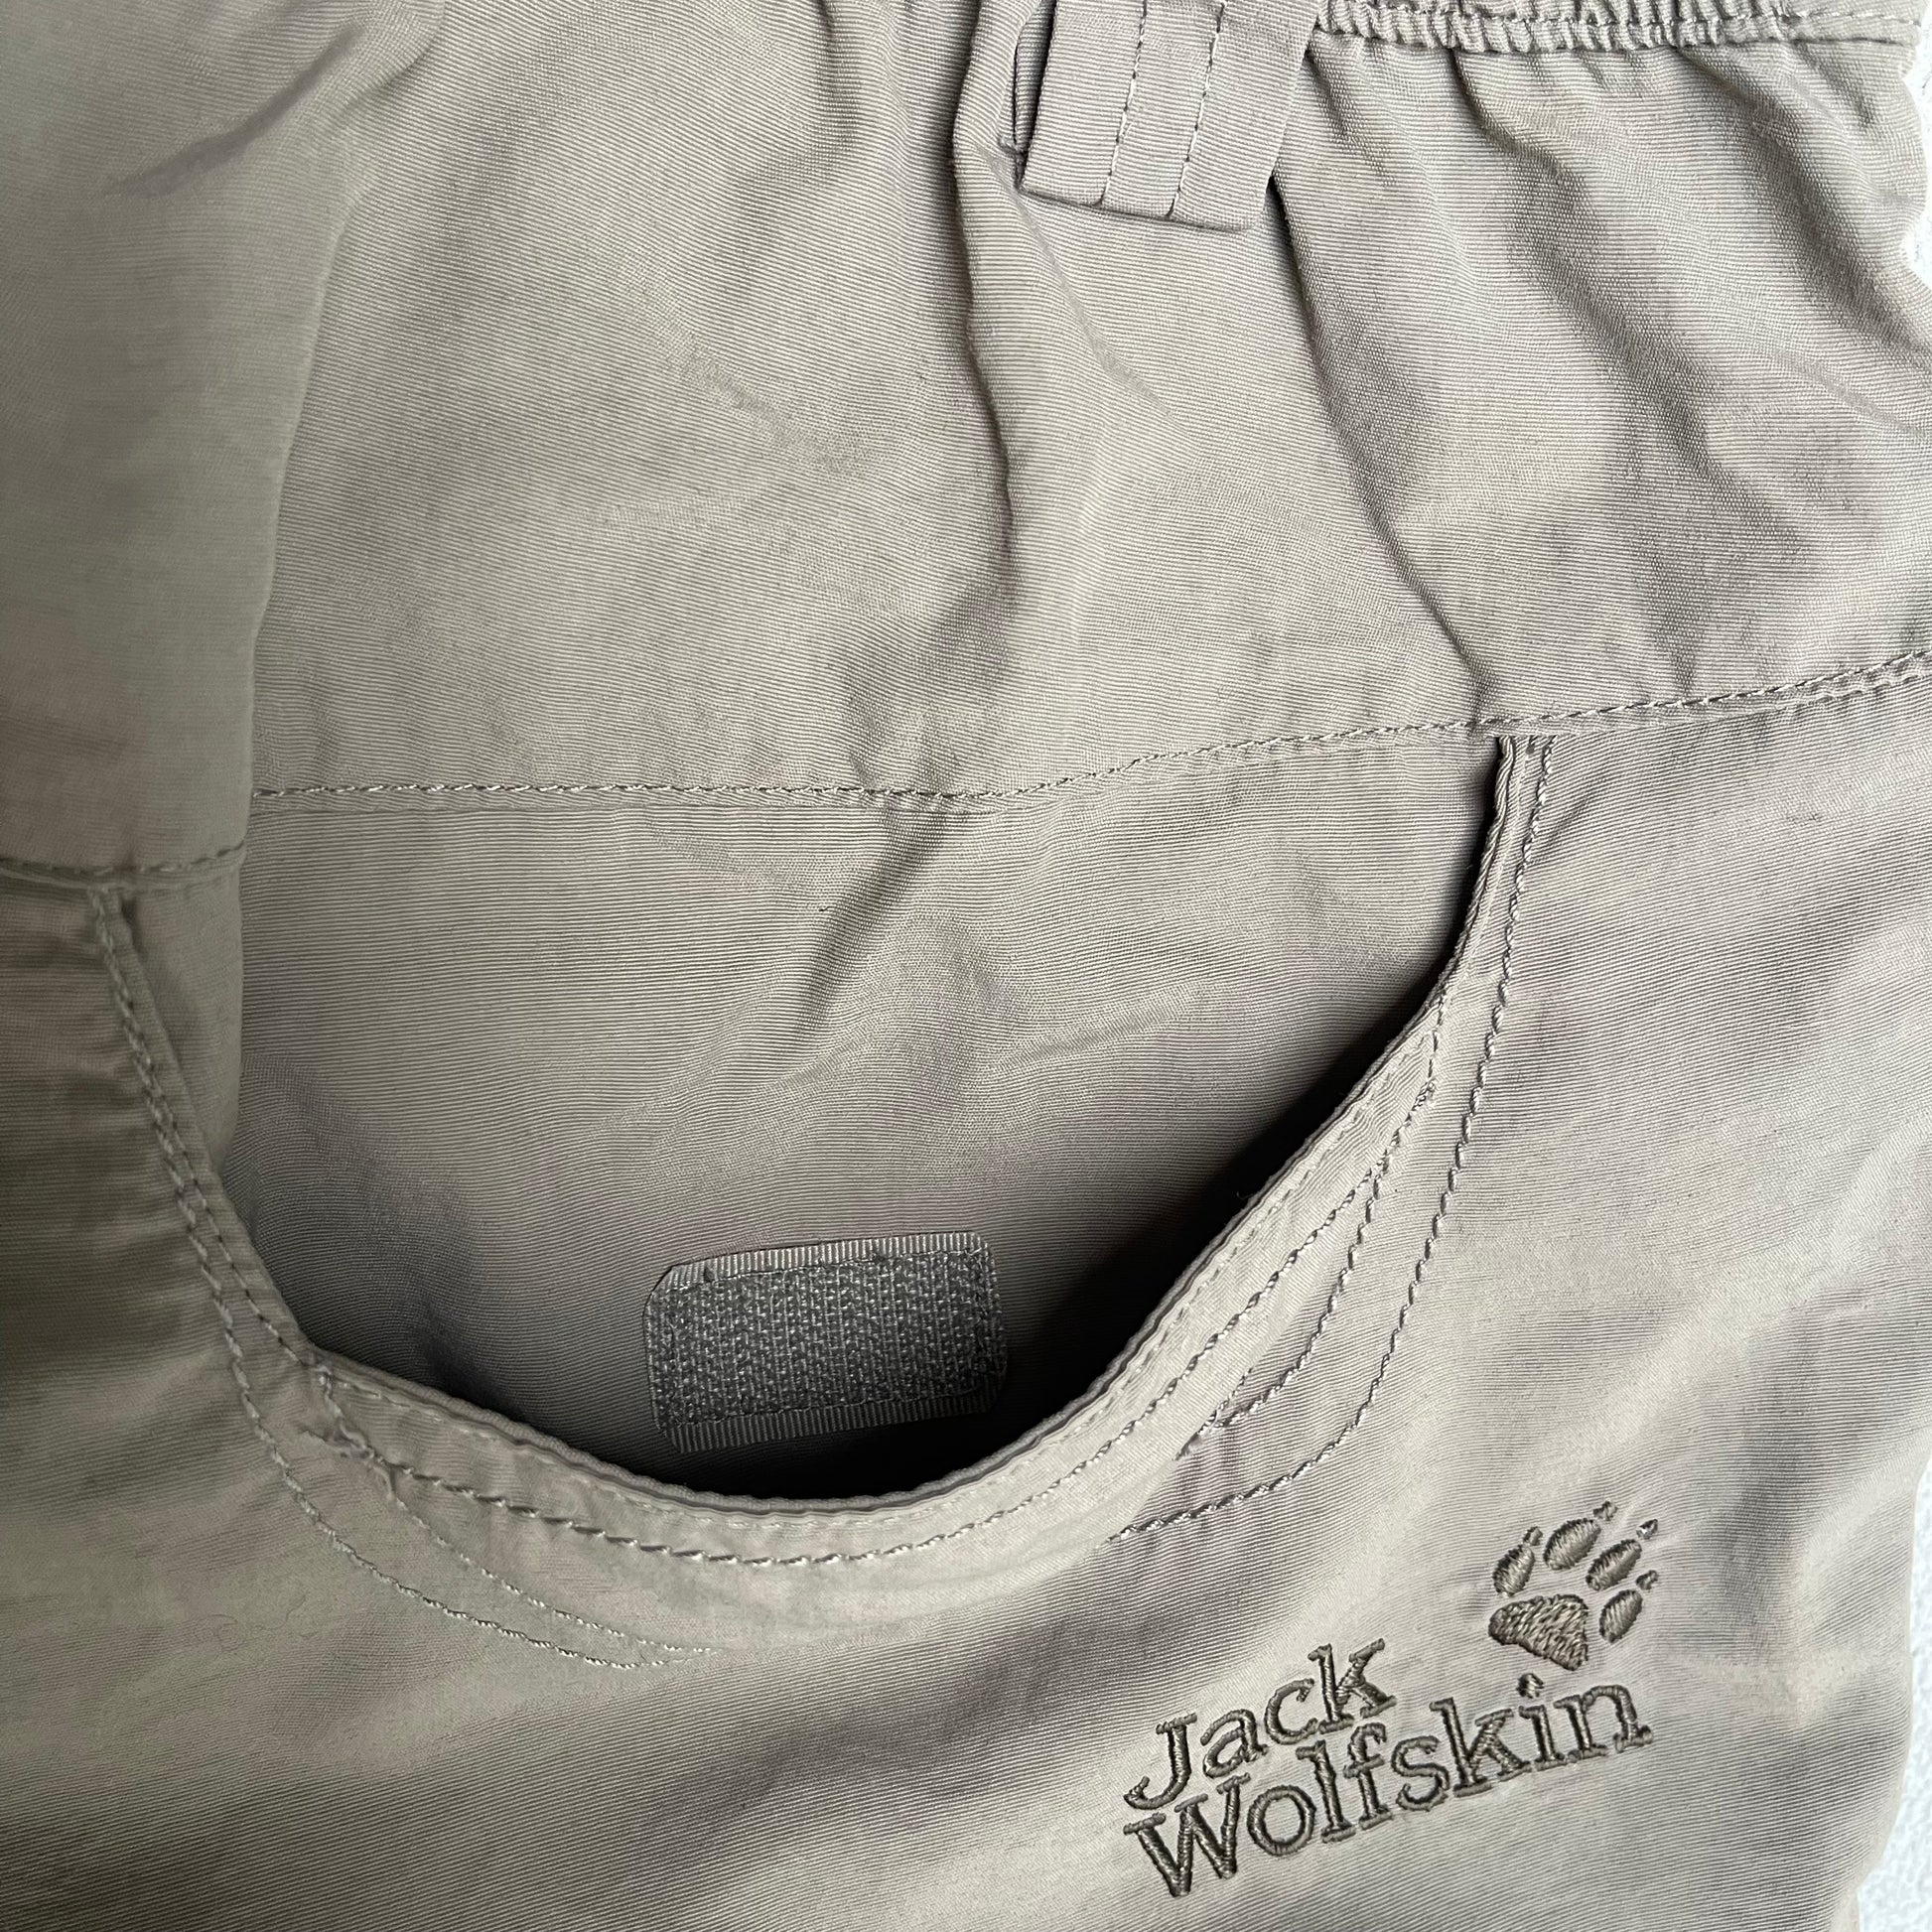 Trekkinghose / Shorts Damen XS von Jack Wolfskin neu - khaki - wanderlich.com